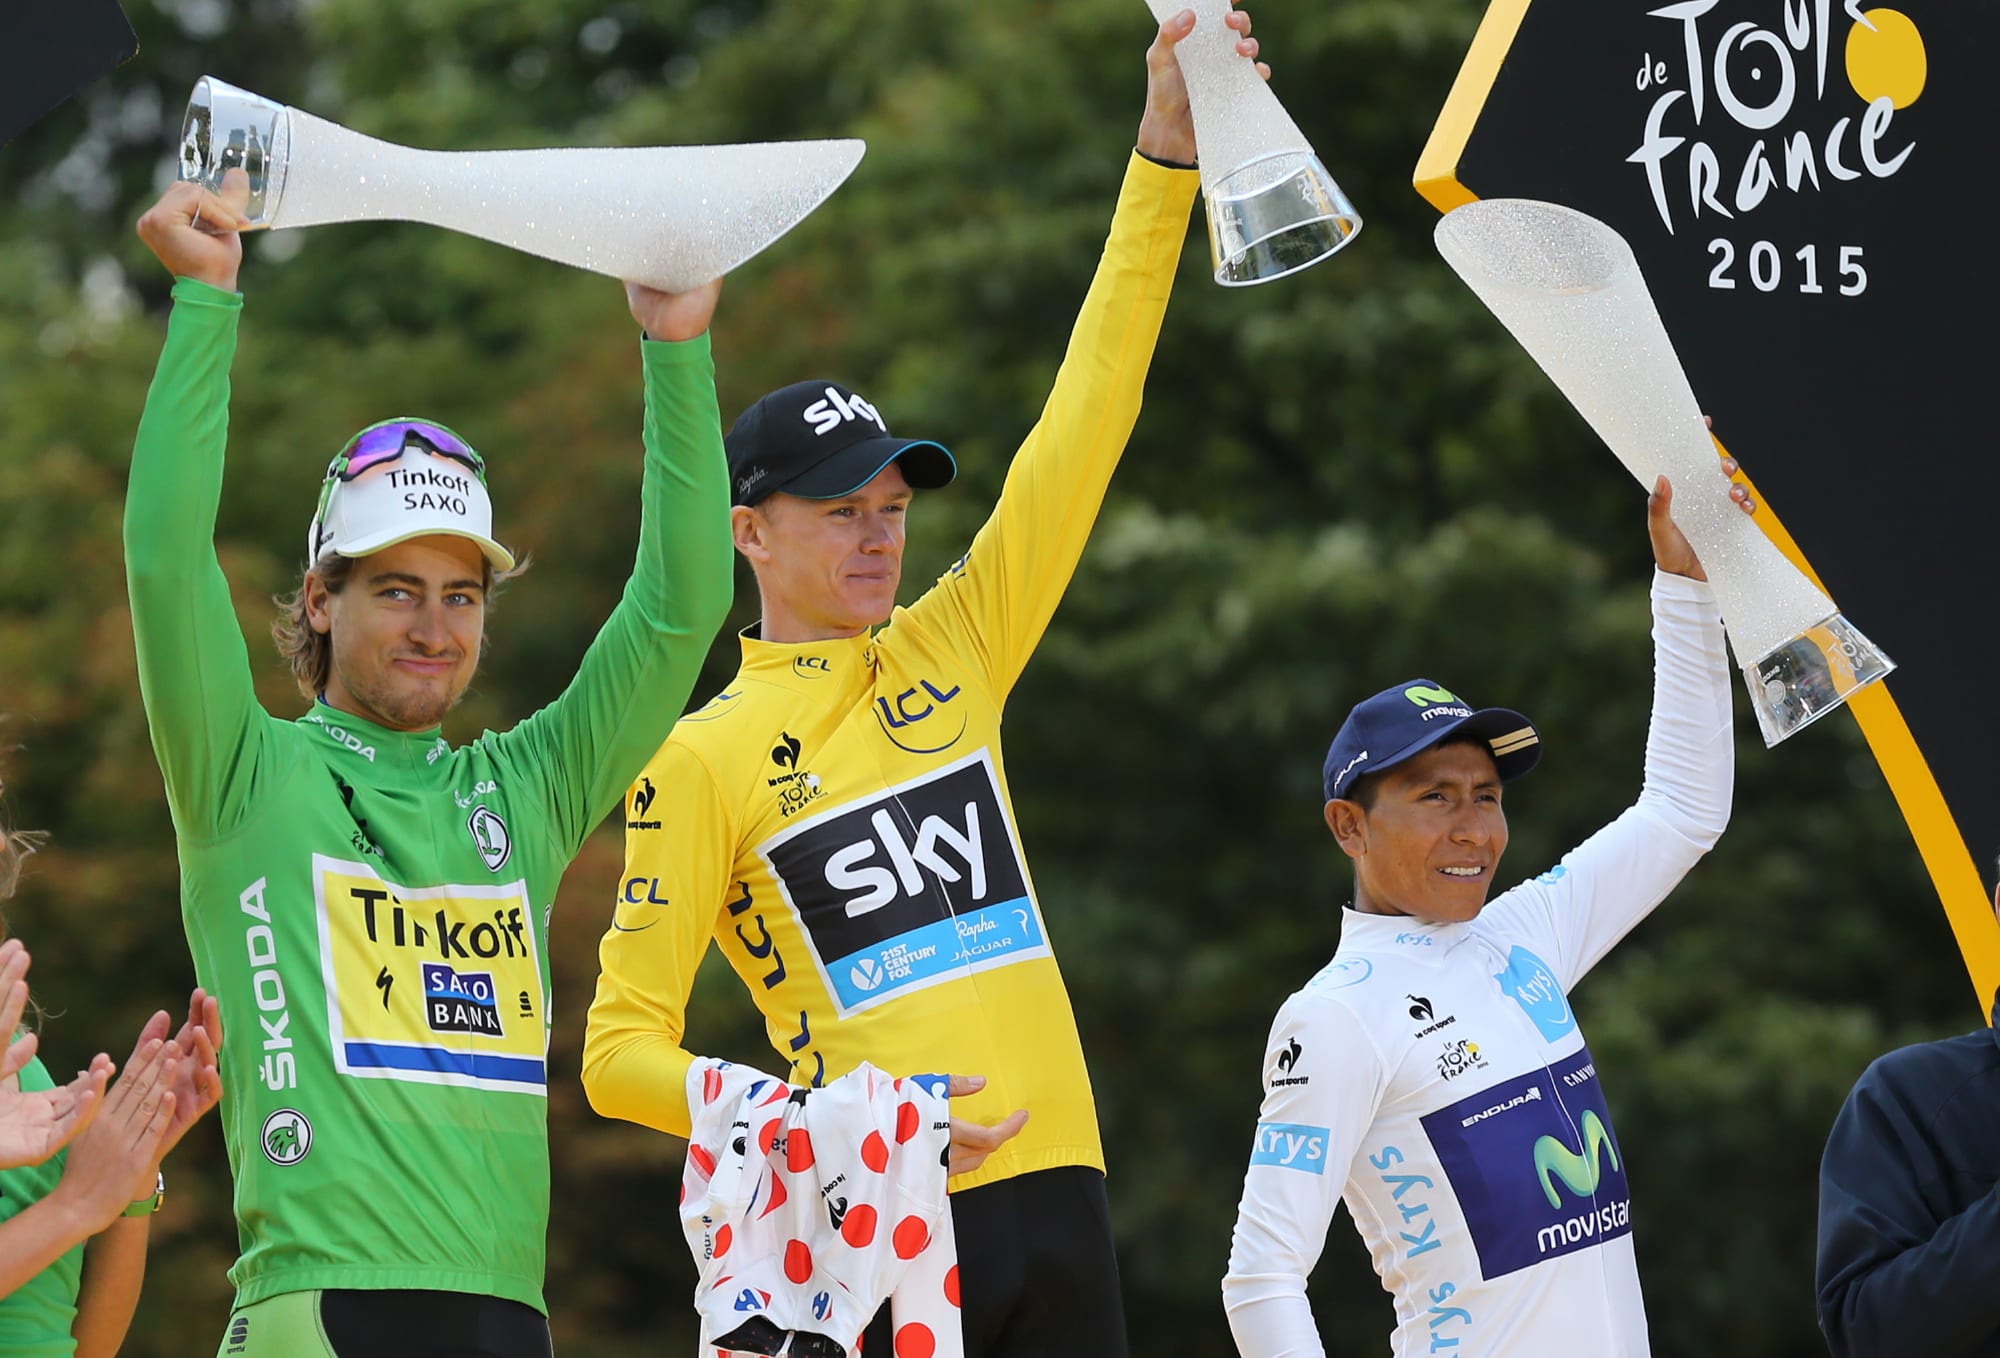 Tour de France 2016 How much money does winner get?